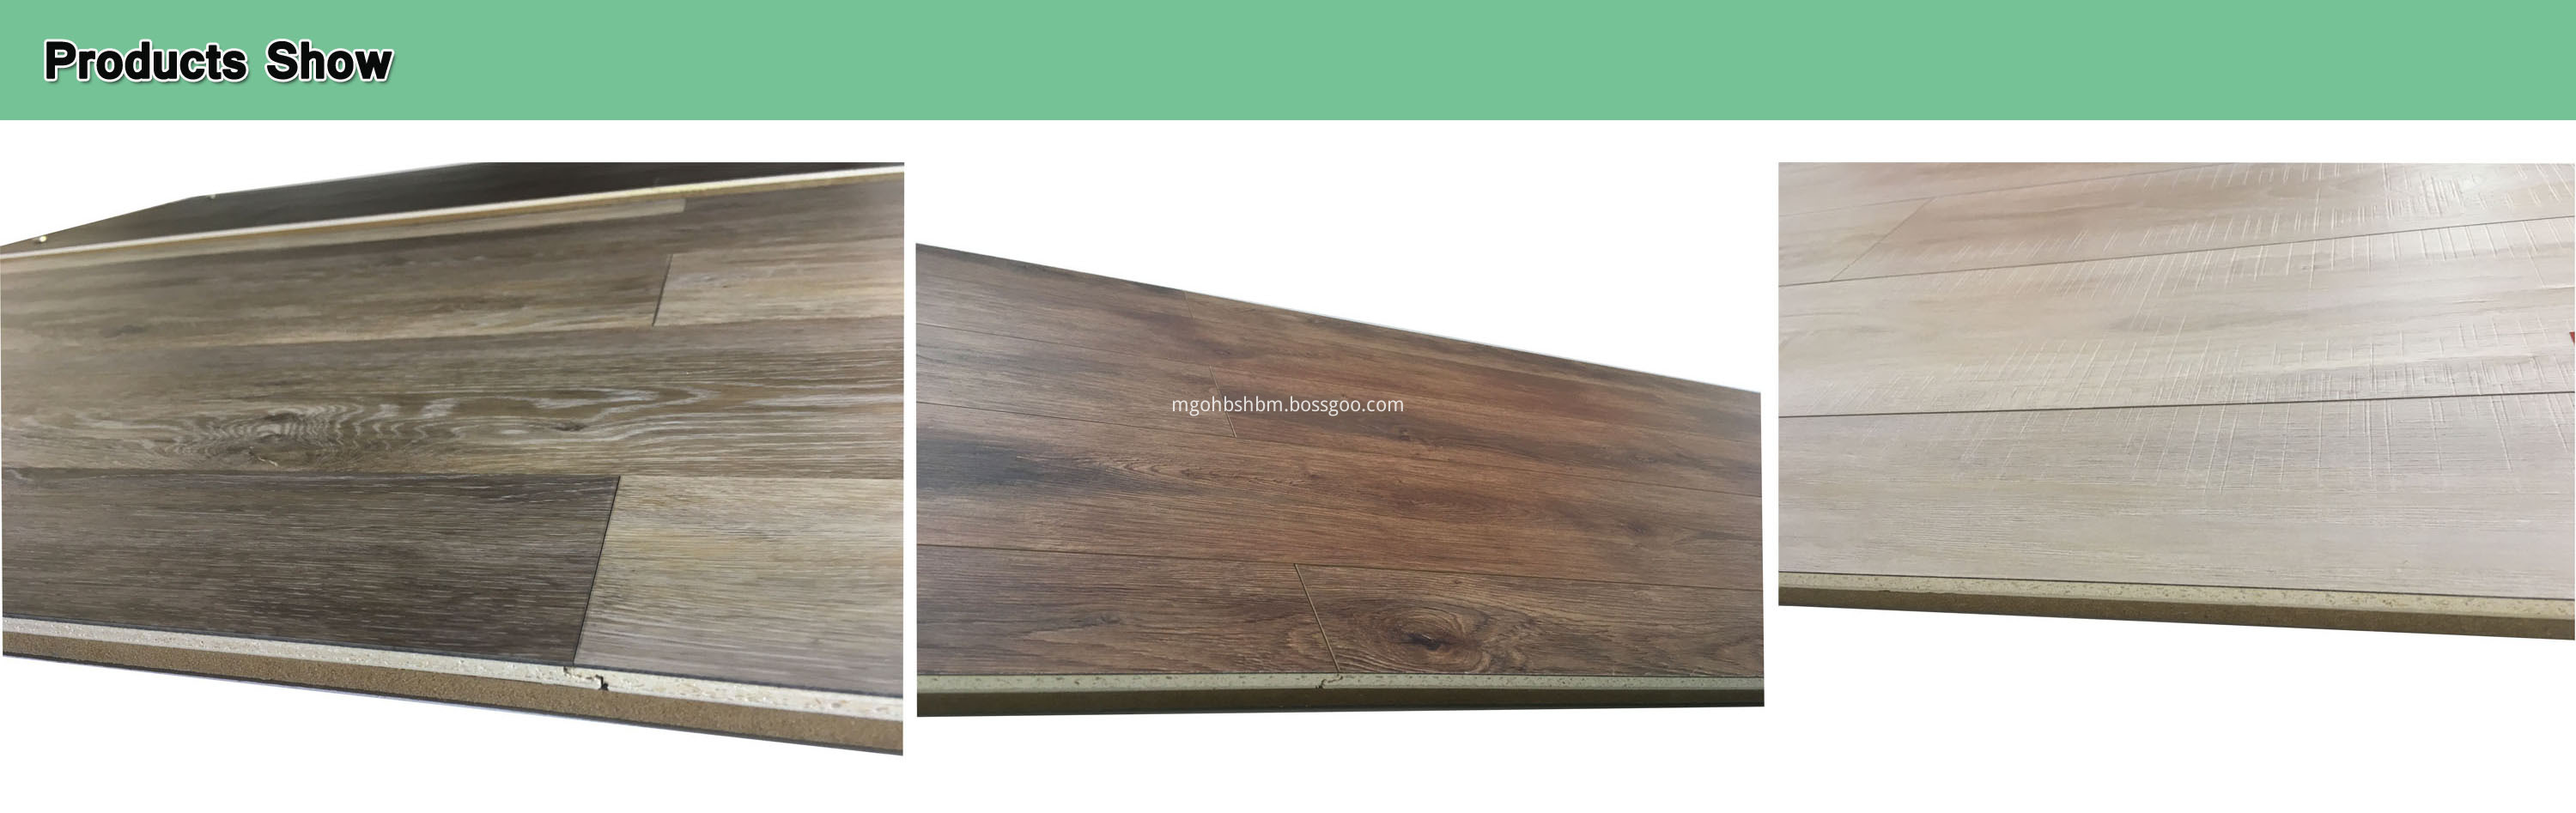 Wooden Grain Decoration Veneering Panel 12mm MgO Board